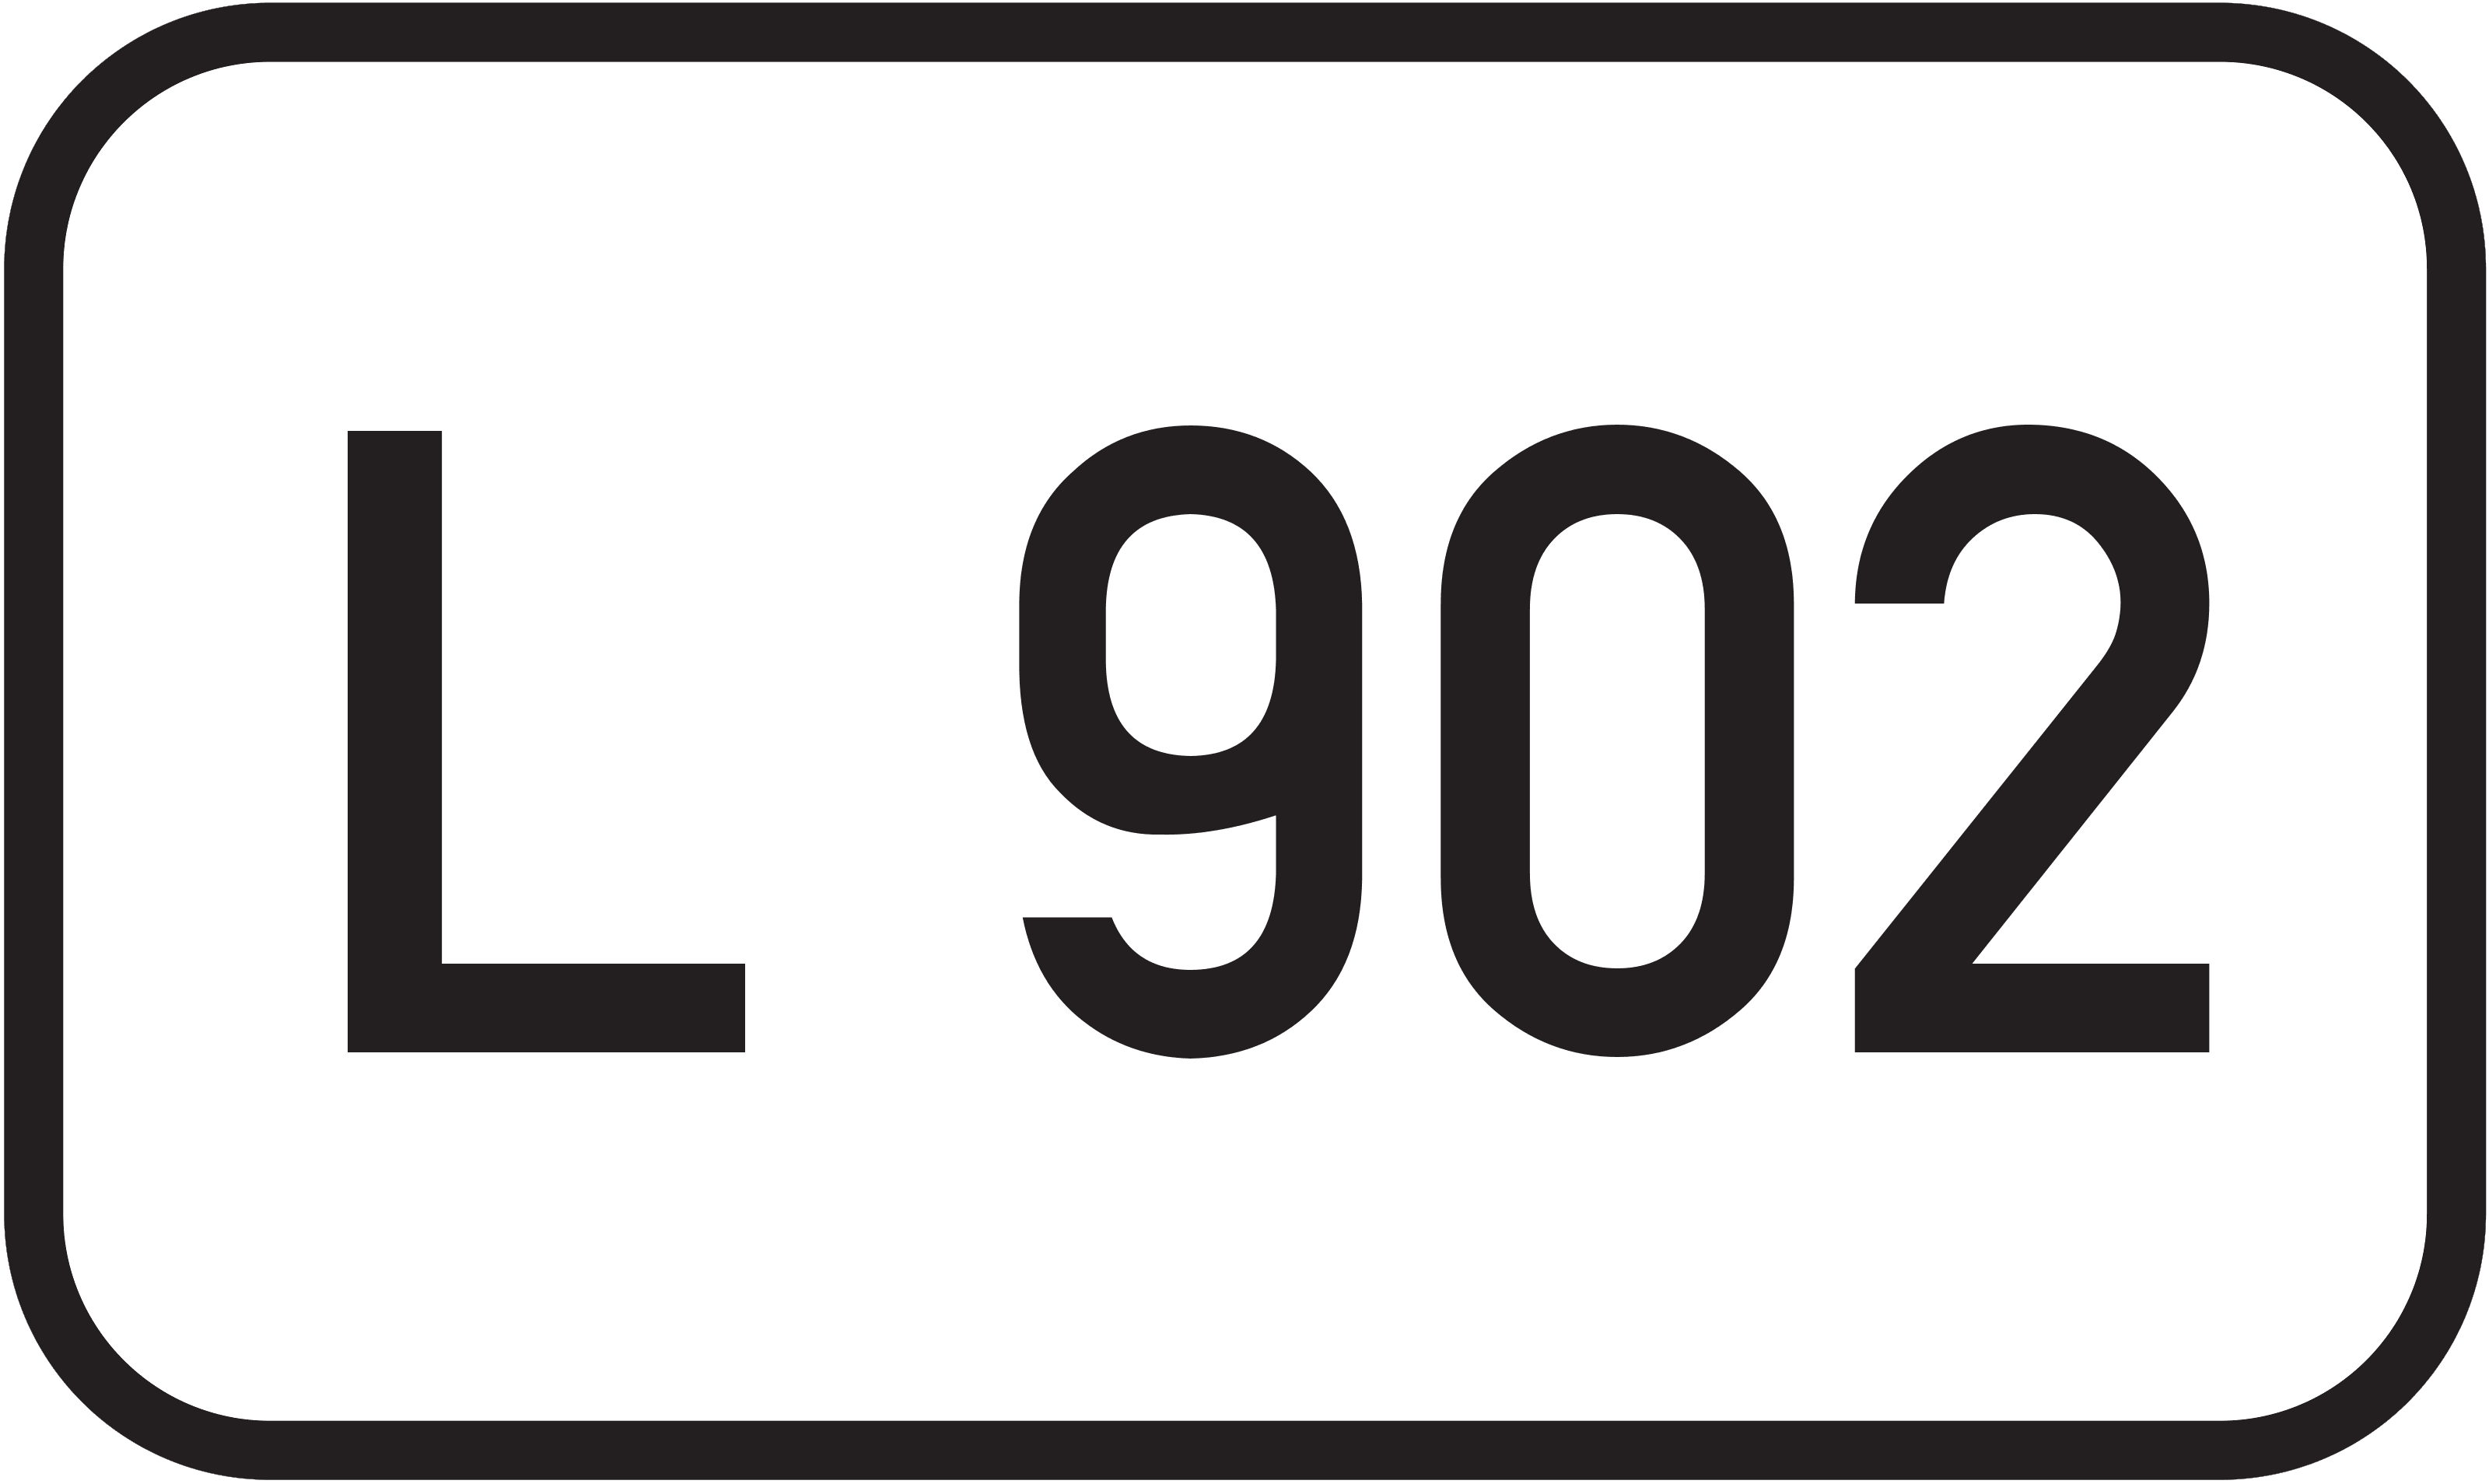 Landesstraße L 902